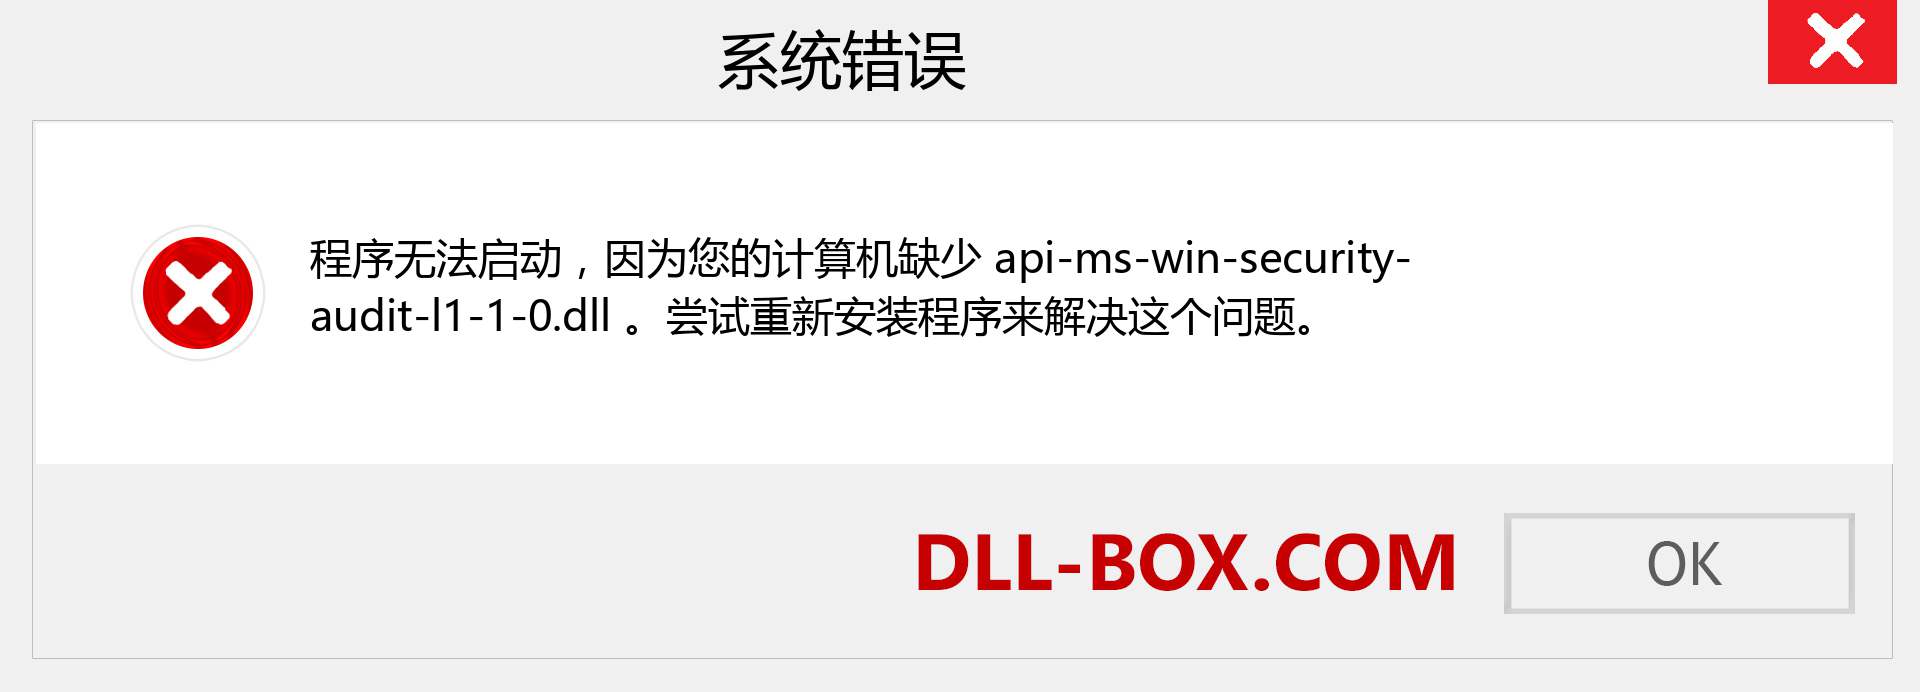 api-ms-win-security-audit-l1-1-0.dll 文件丢失？。 适用于 Windows 7、8、10 的下载 - 修复 Windows、照片、图像上的 api-ms-win-security-audit-l1-1-0 dll 丢失错误